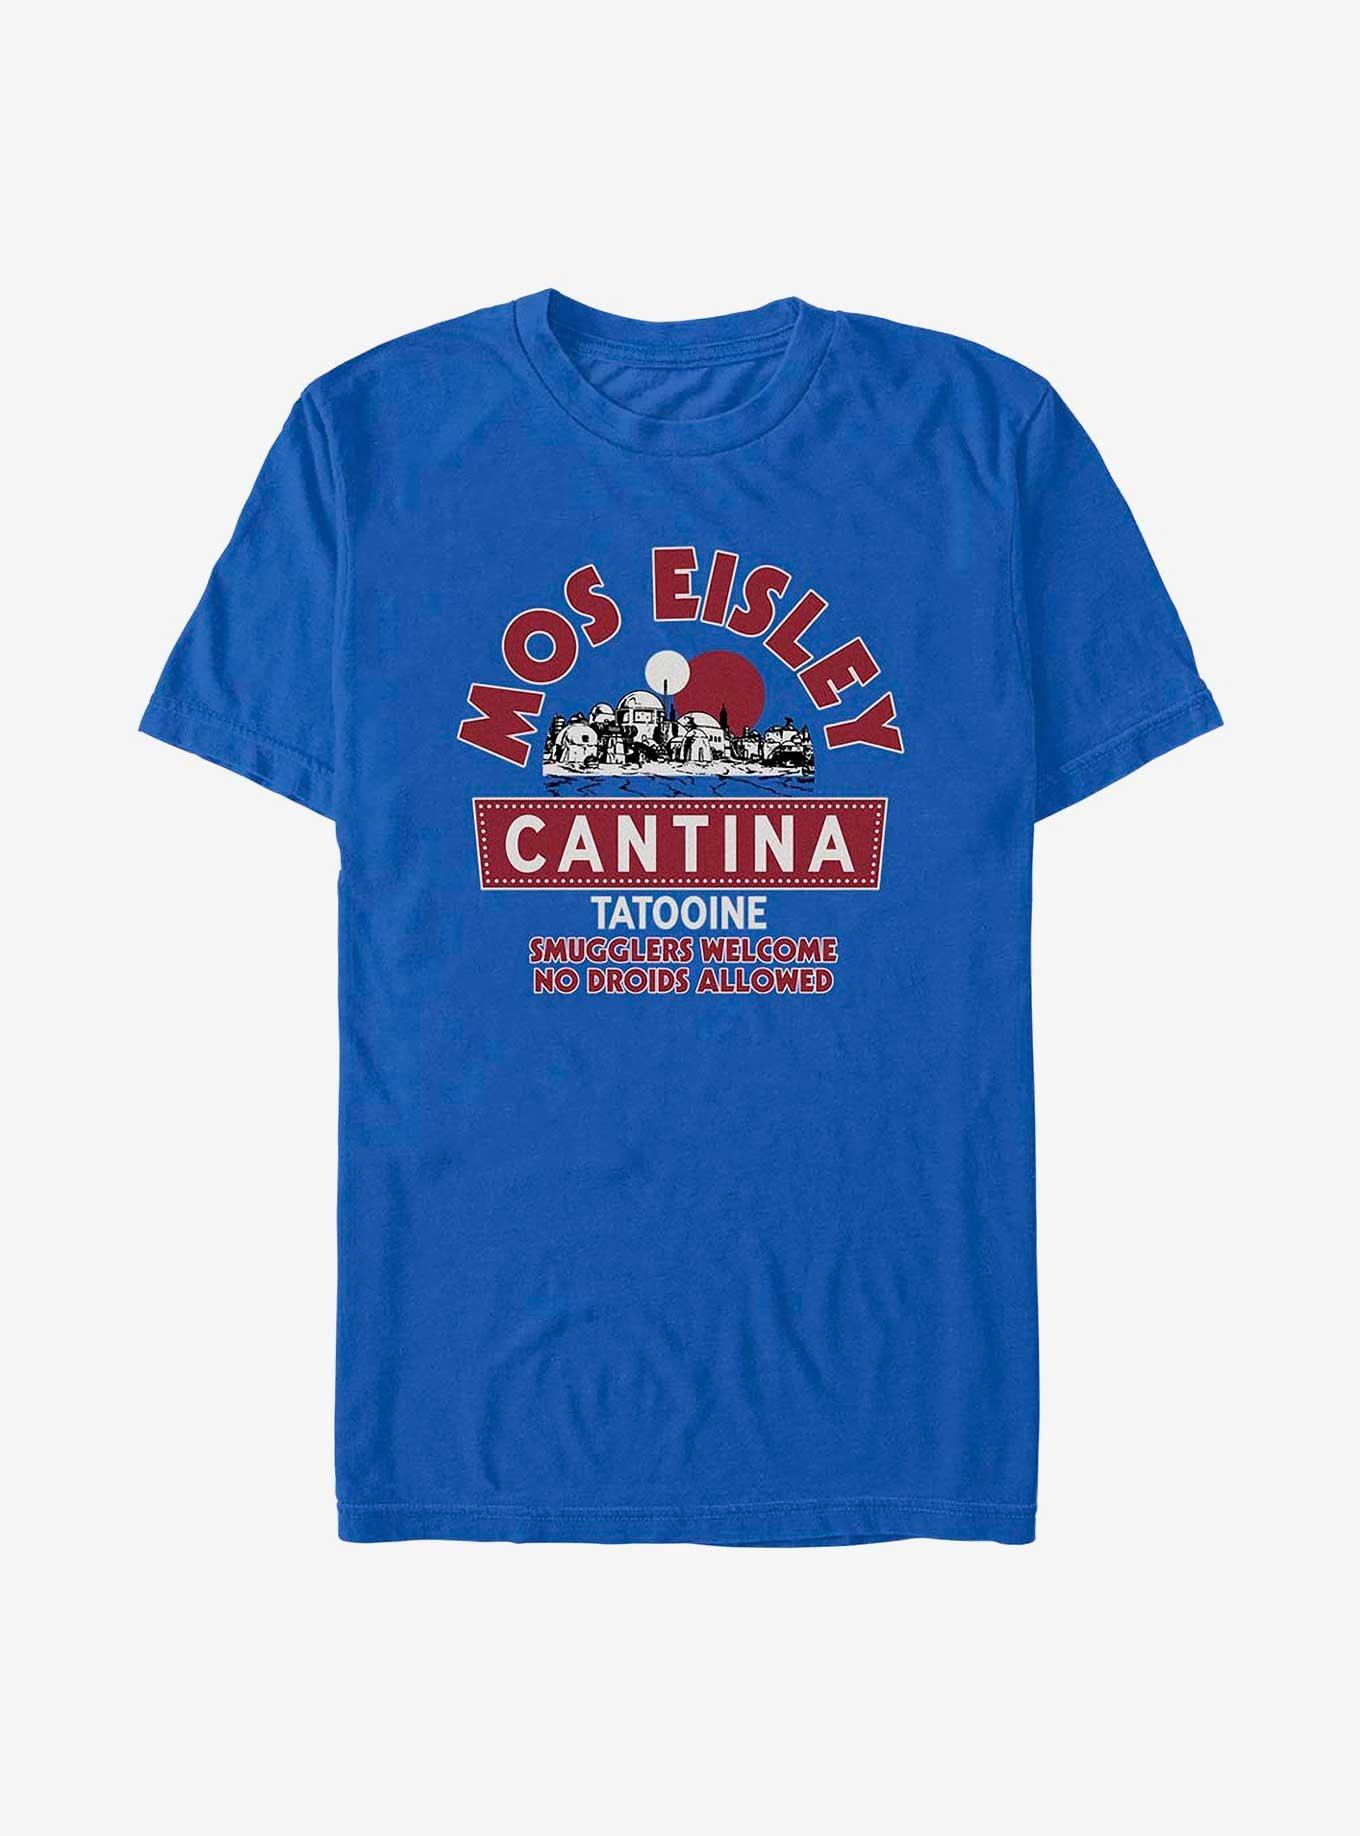 Star Wars Mos Eisley Cantina Welcomes Smugglers T-Shirt